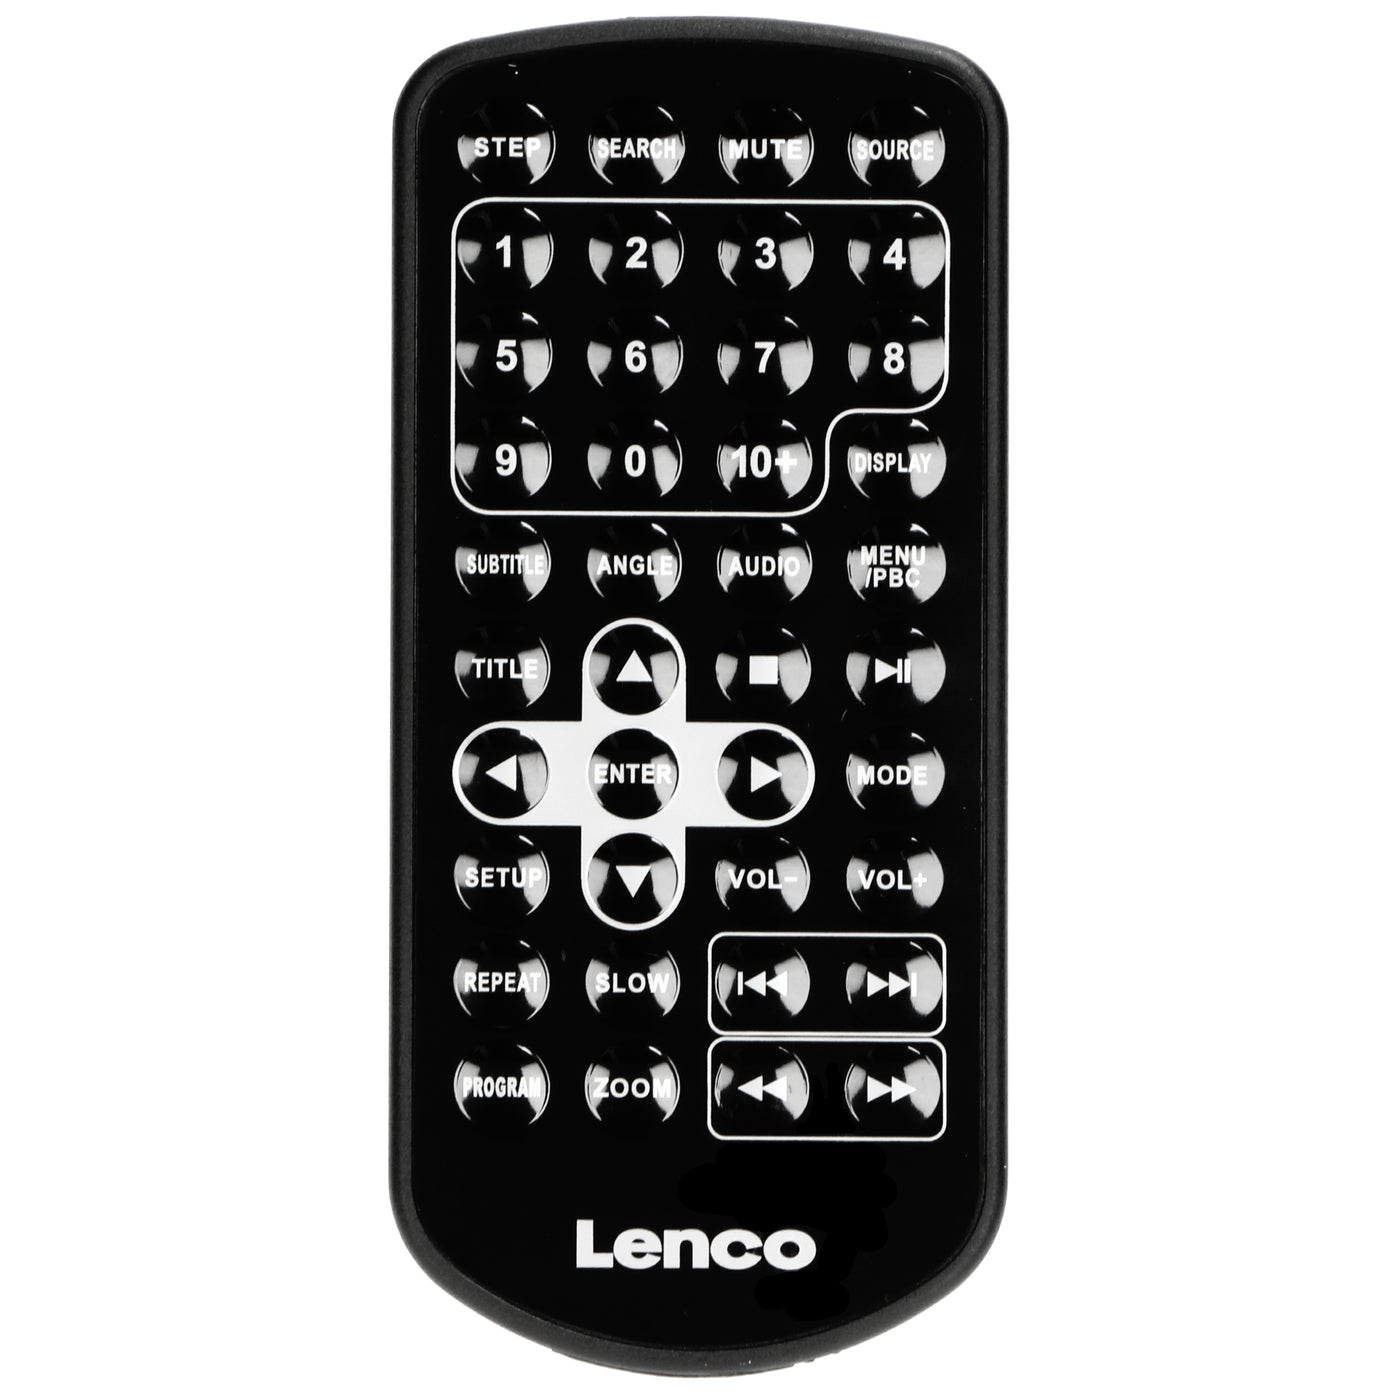 Lenco DVP-1210 - Przenośny odtwarzacz DVD 12" z gniazdem SD - Czarny 